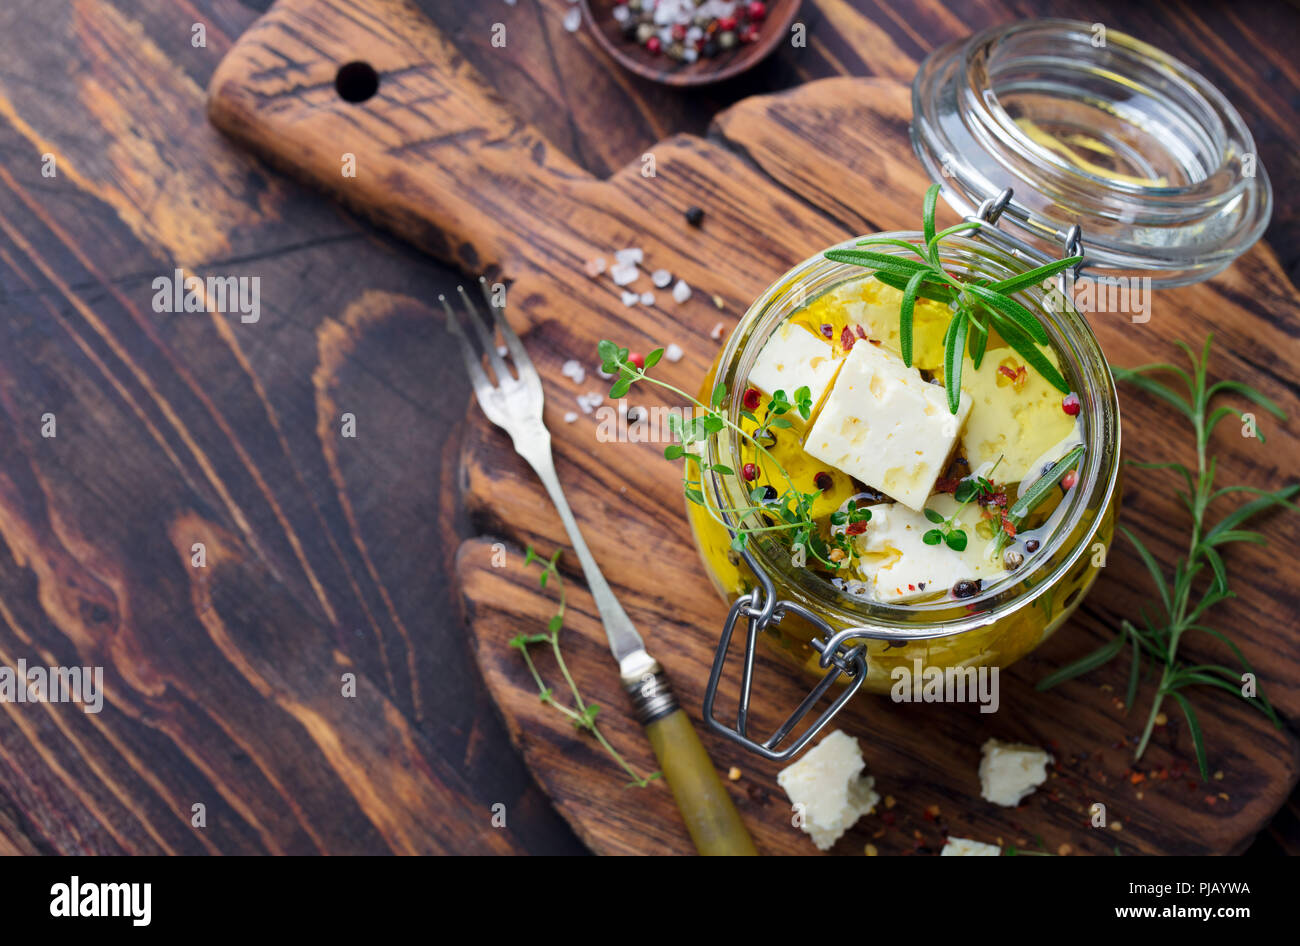 Le fromage Feta mariné à l'huile d'olive avec des herbes fraîches dans un bocal en verre. Fond de bois. Vue d'en haut. Copier l'espace. Banque D'Images